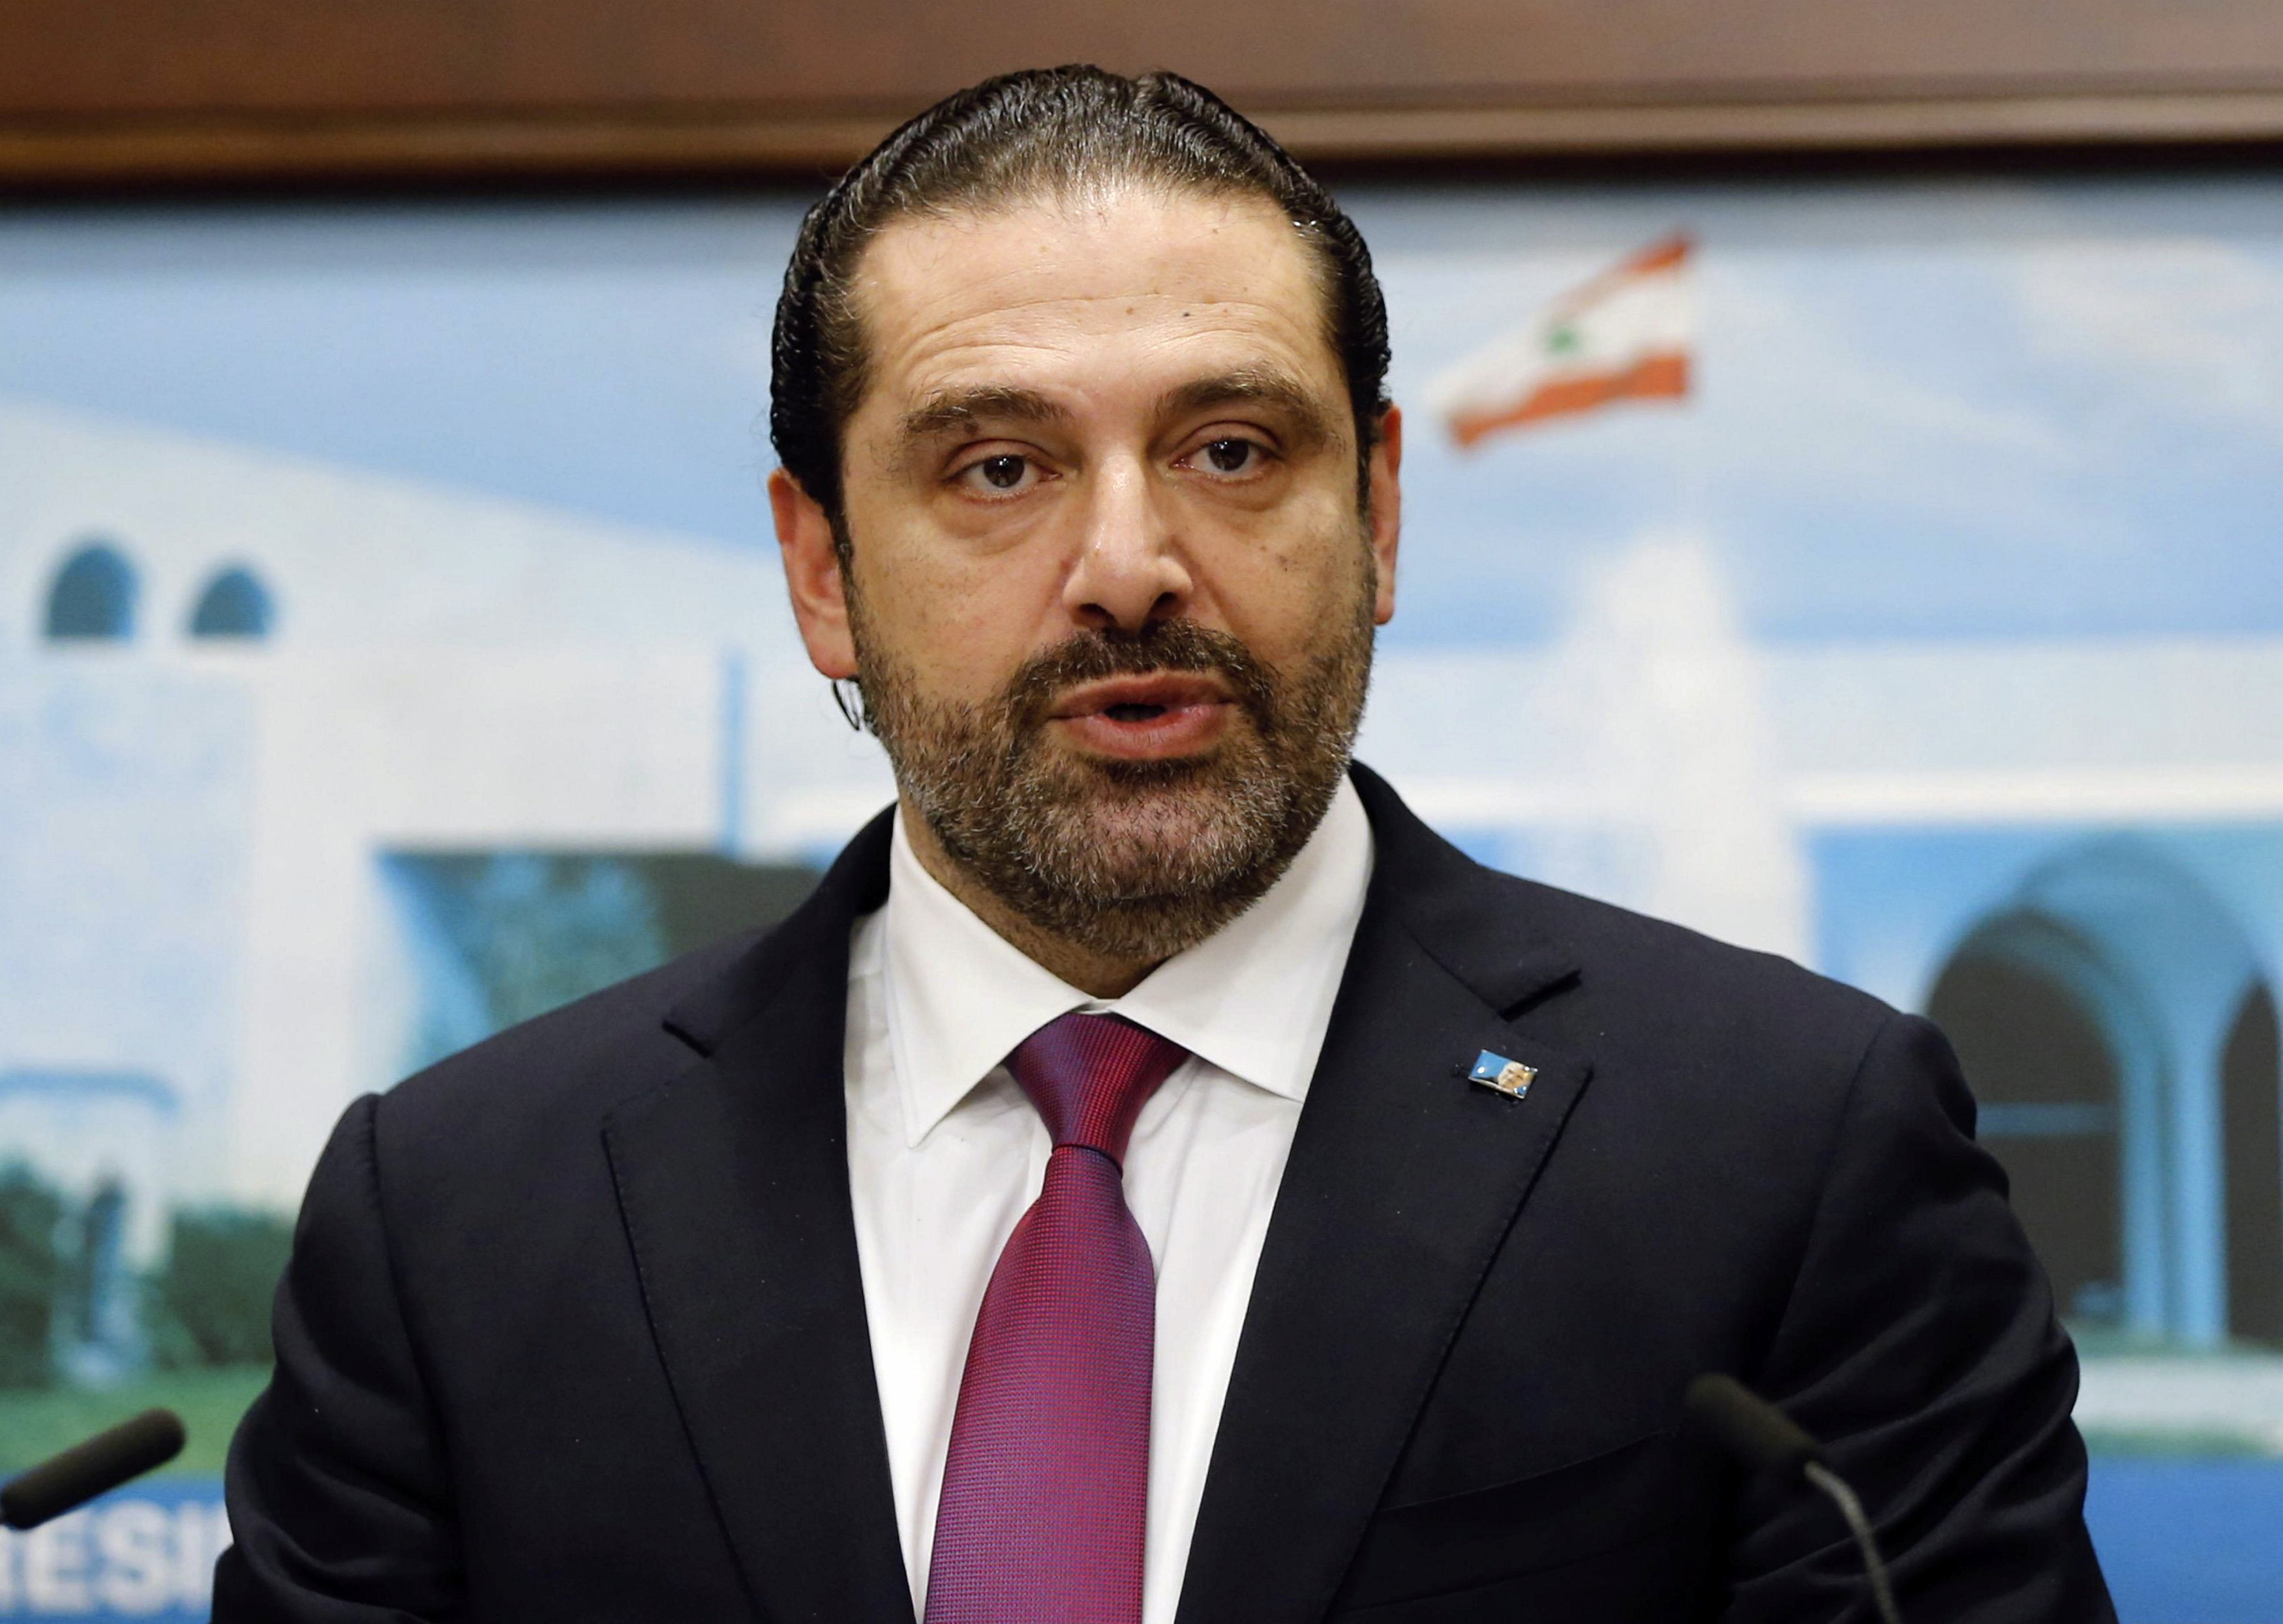 Lebanese Prime Minister Saad Hariri withdraws resignation